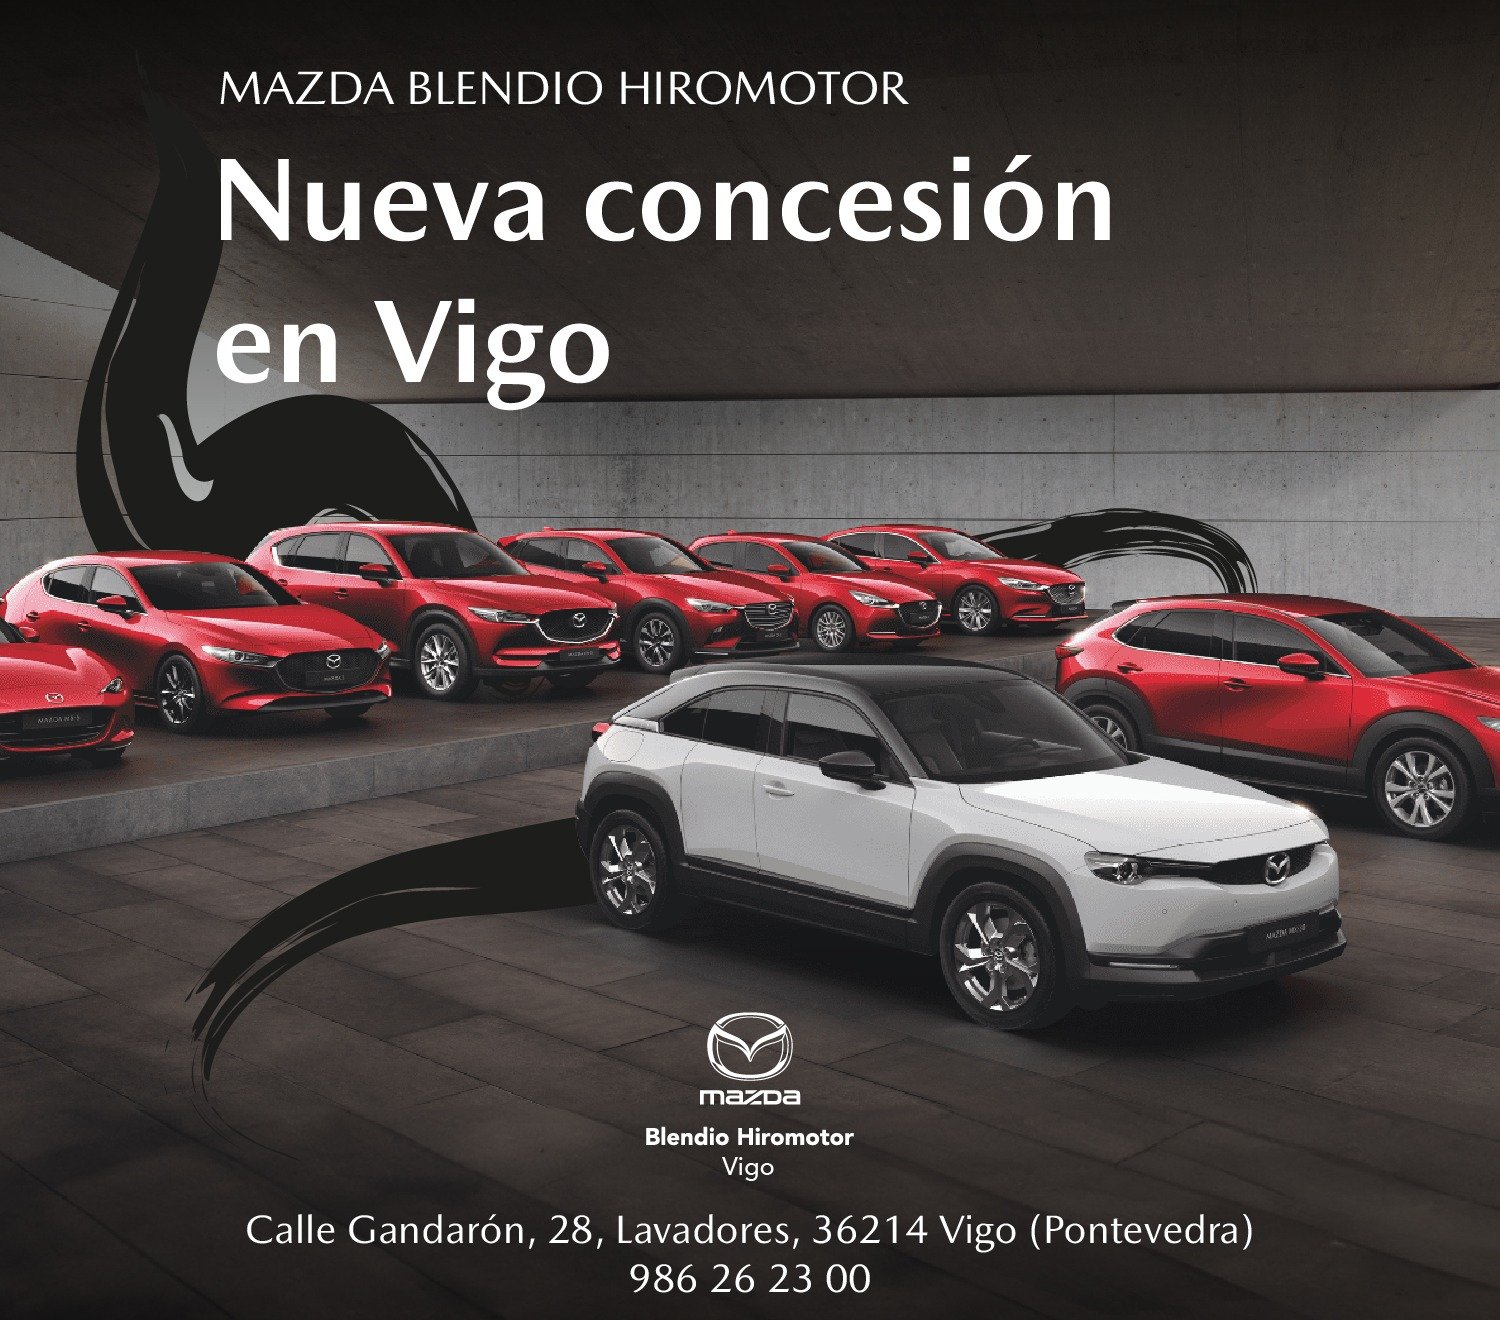 ¡Bienvenido a Mazda Blendio Hiromotor Vigo! Descubre nuestro nuevo concesionario oficial